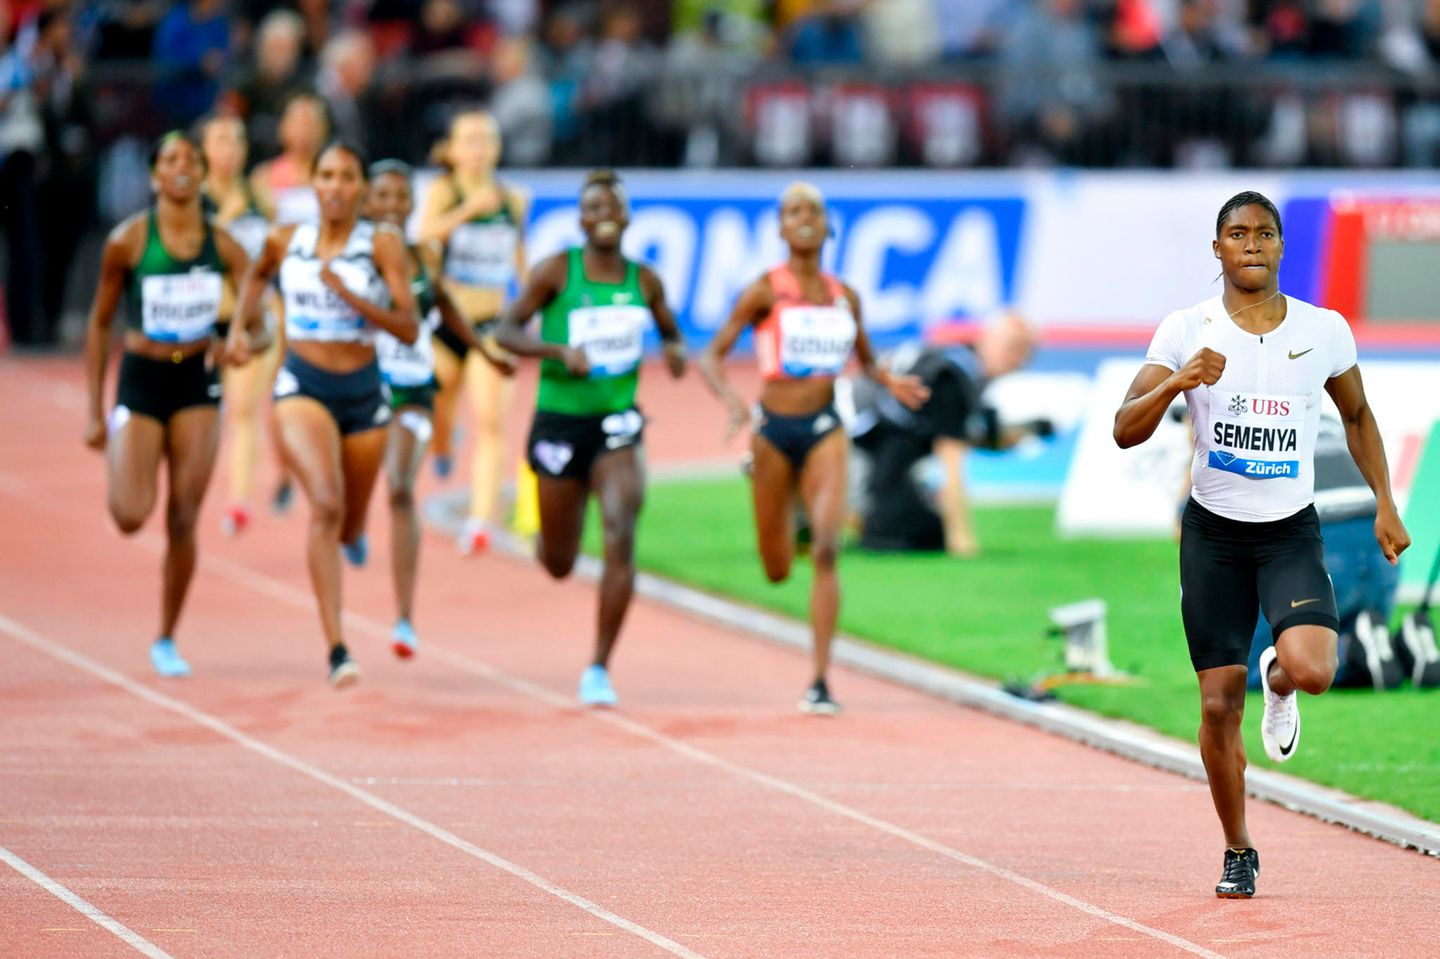 Fällt die Testosteron-Regel? Caster Semenya gegen die IAAF